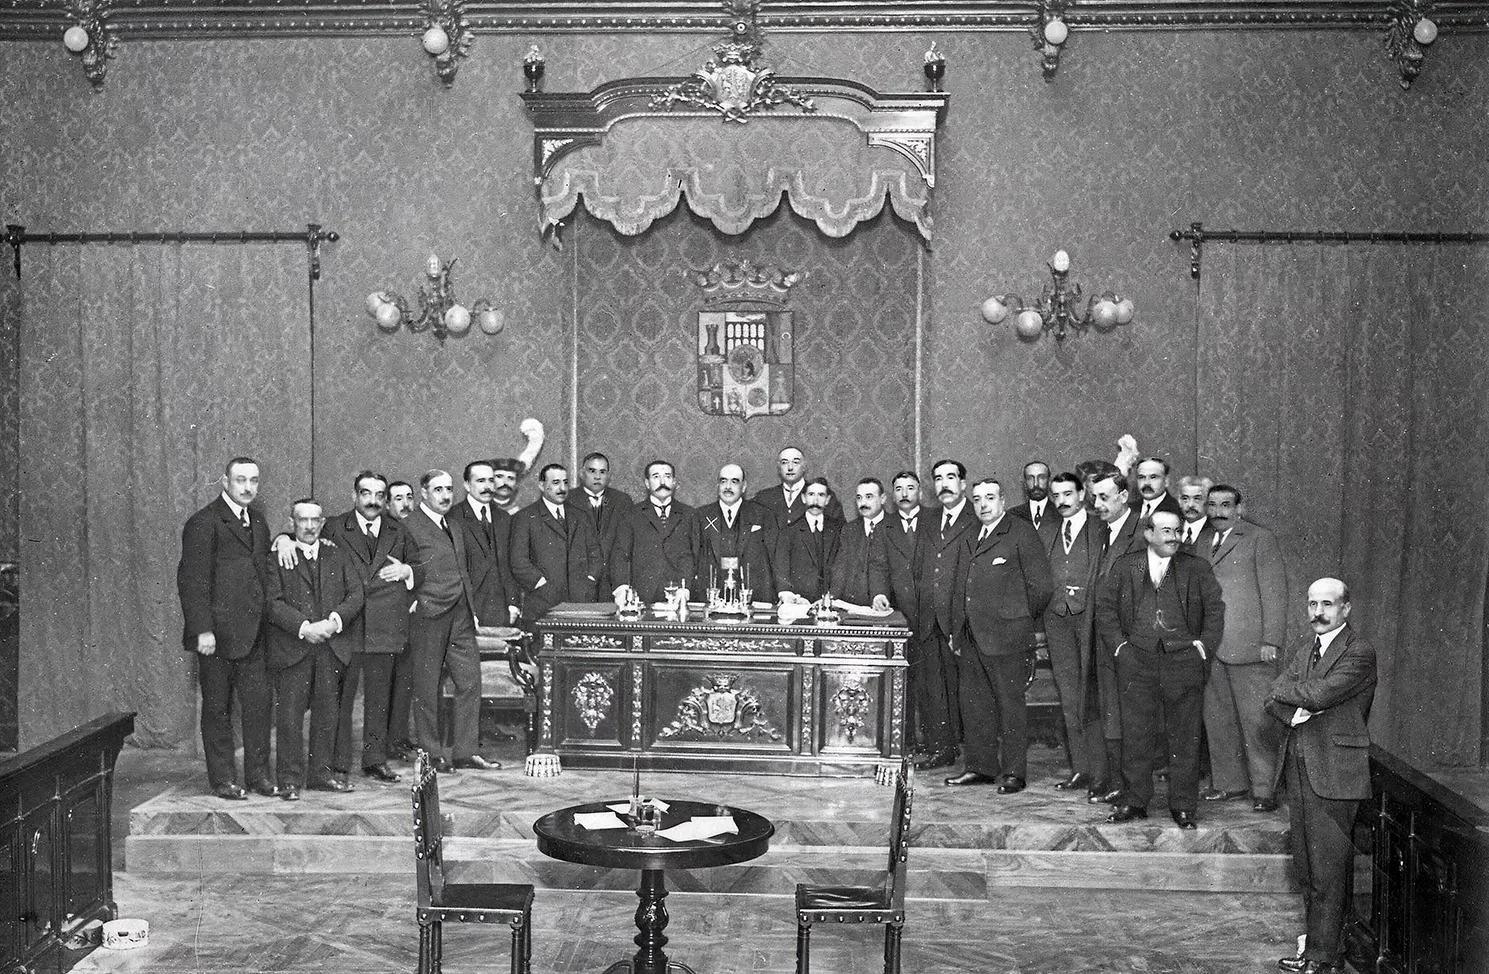 Luis López Ballesteros, al centre de la taula, presideix la sessió al Consell Provincial de Madrid, l’any 1918